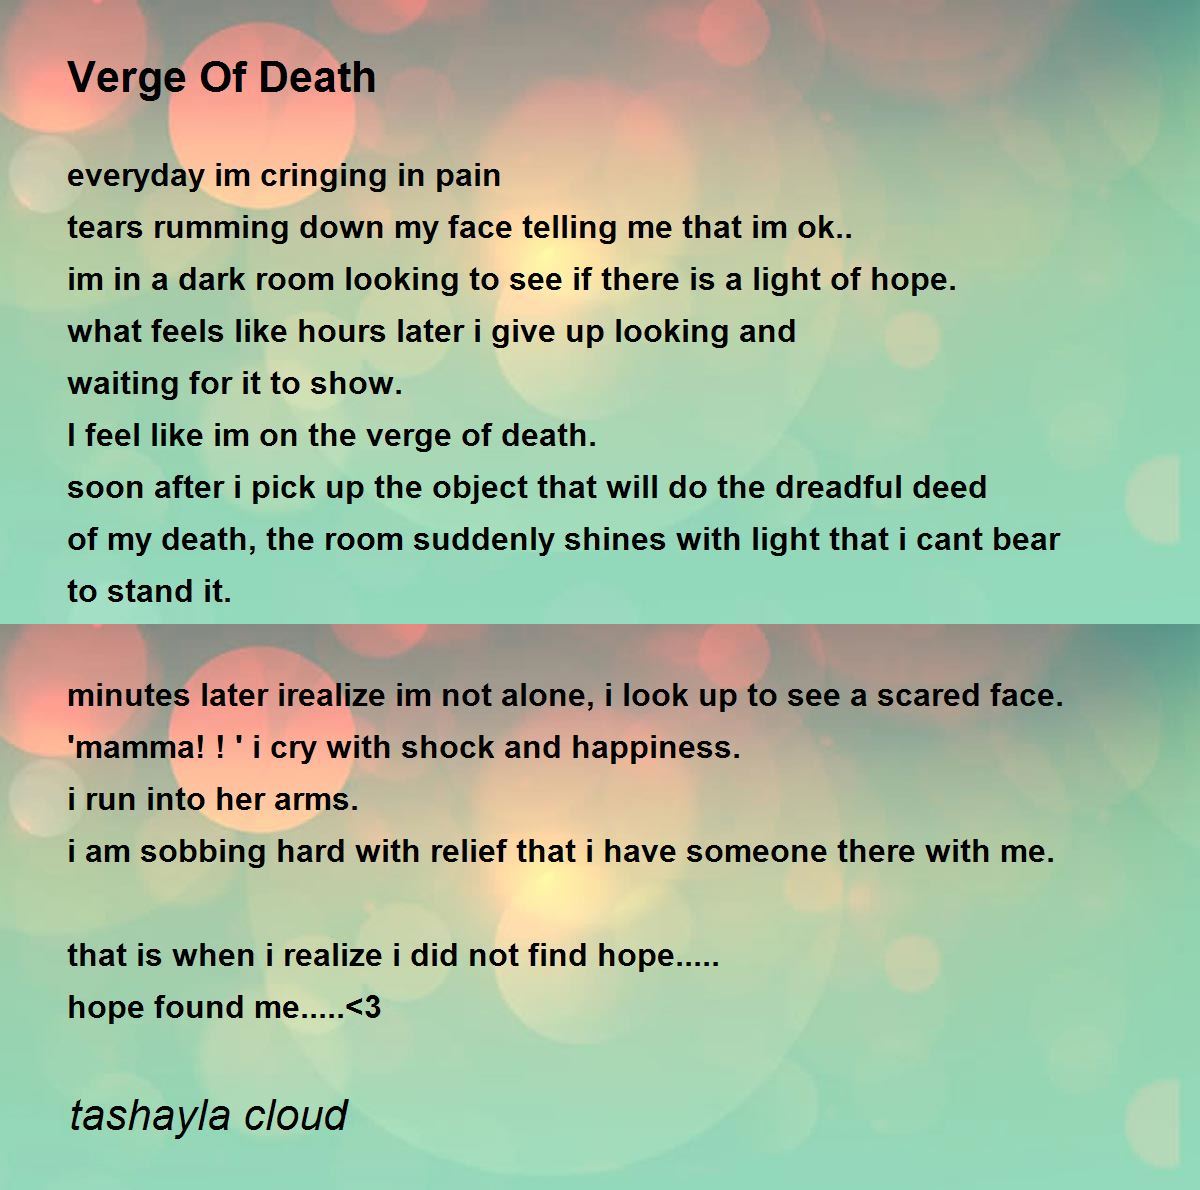 Verge Of Death - Verge Of Death Poem by tashayla cloud